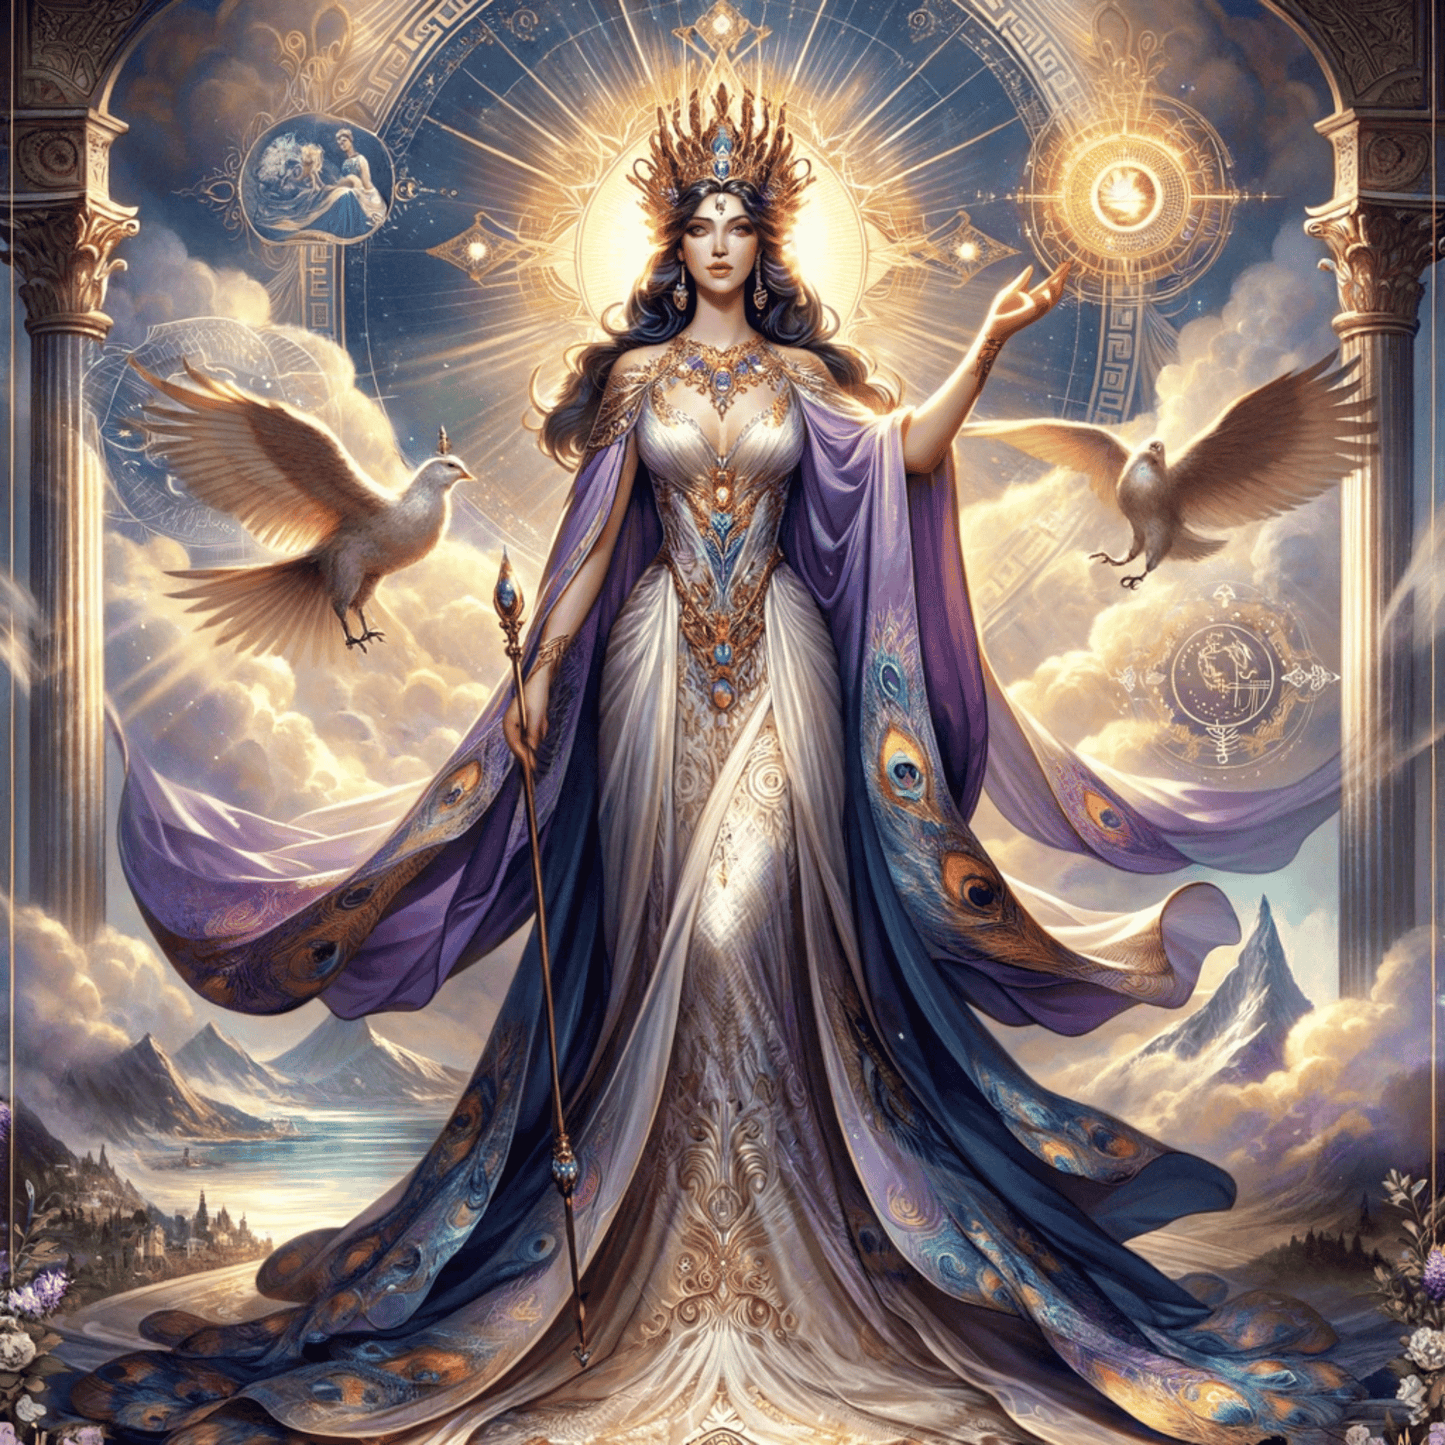 Obejmi královnu bohů: Hera Art for Your Space - Abraxas Amulets ® Magic ♾️ Talismany ♾️ Zasvěcení